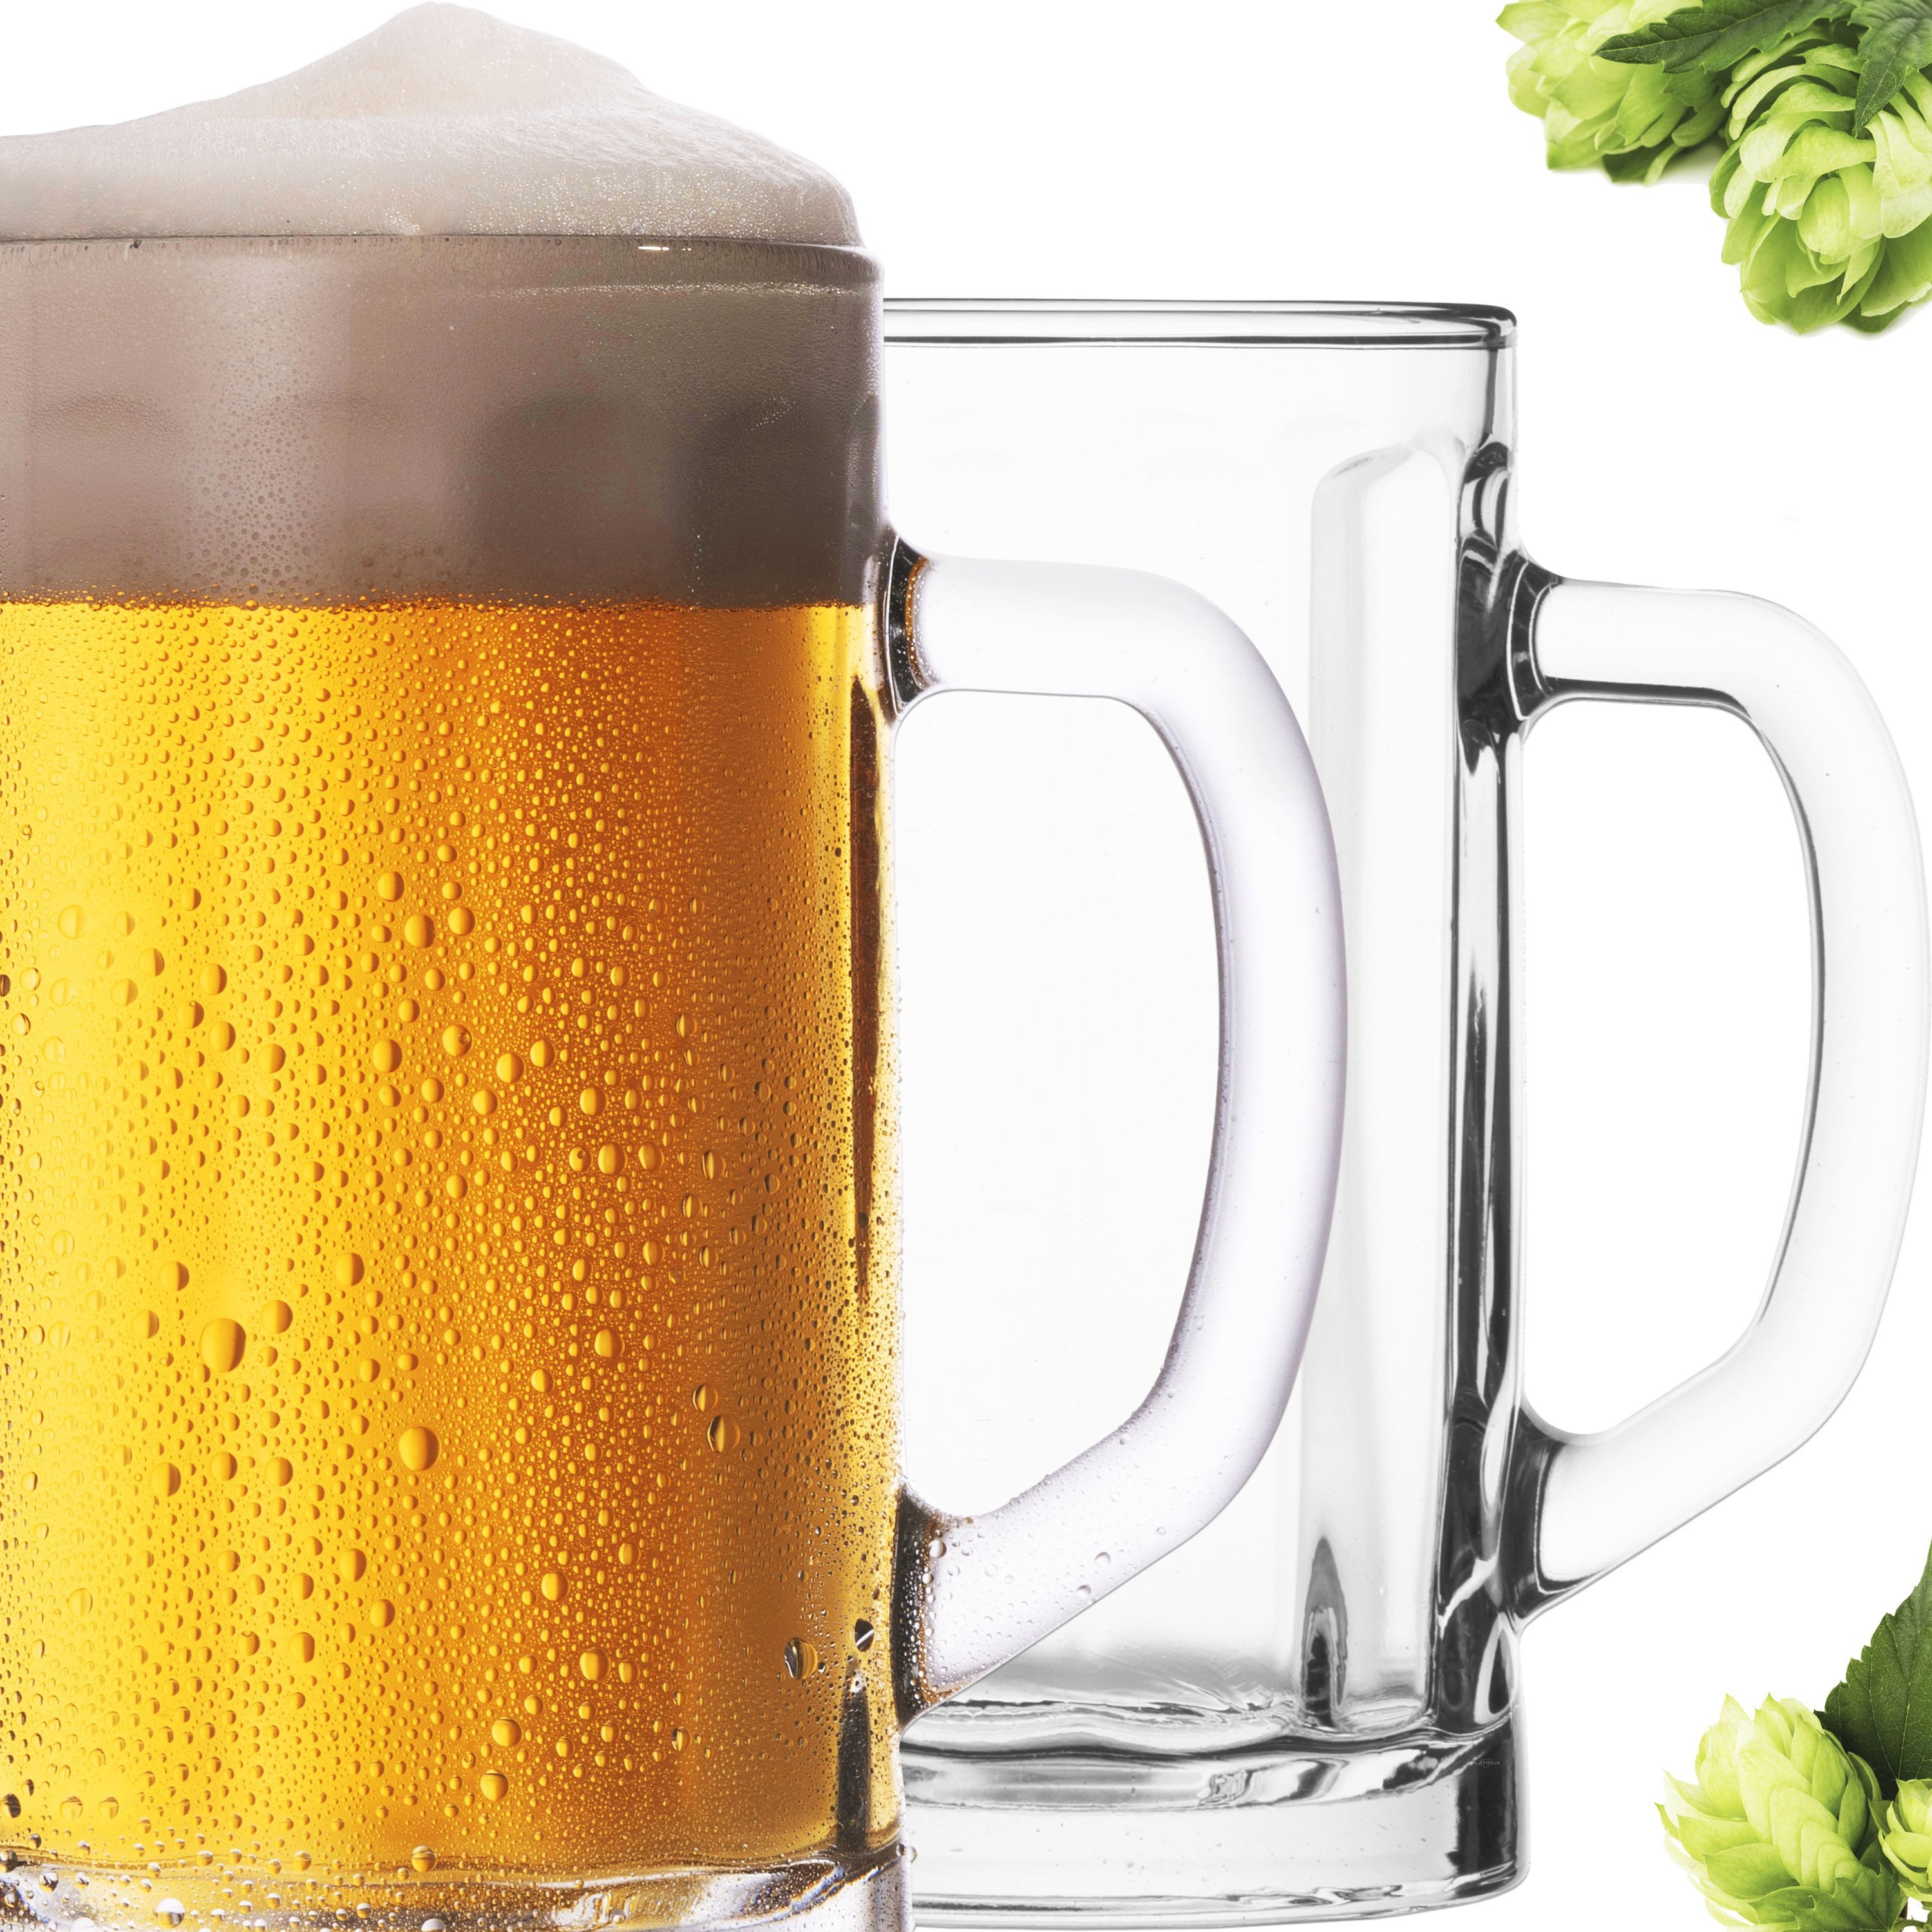 PLATINUX Bierglas Bierseidel mit Henkel 2-Teilig, Glas, 300ml (max. 350ml) Bierkrug Maßkrug Bierkrüge Biergläser